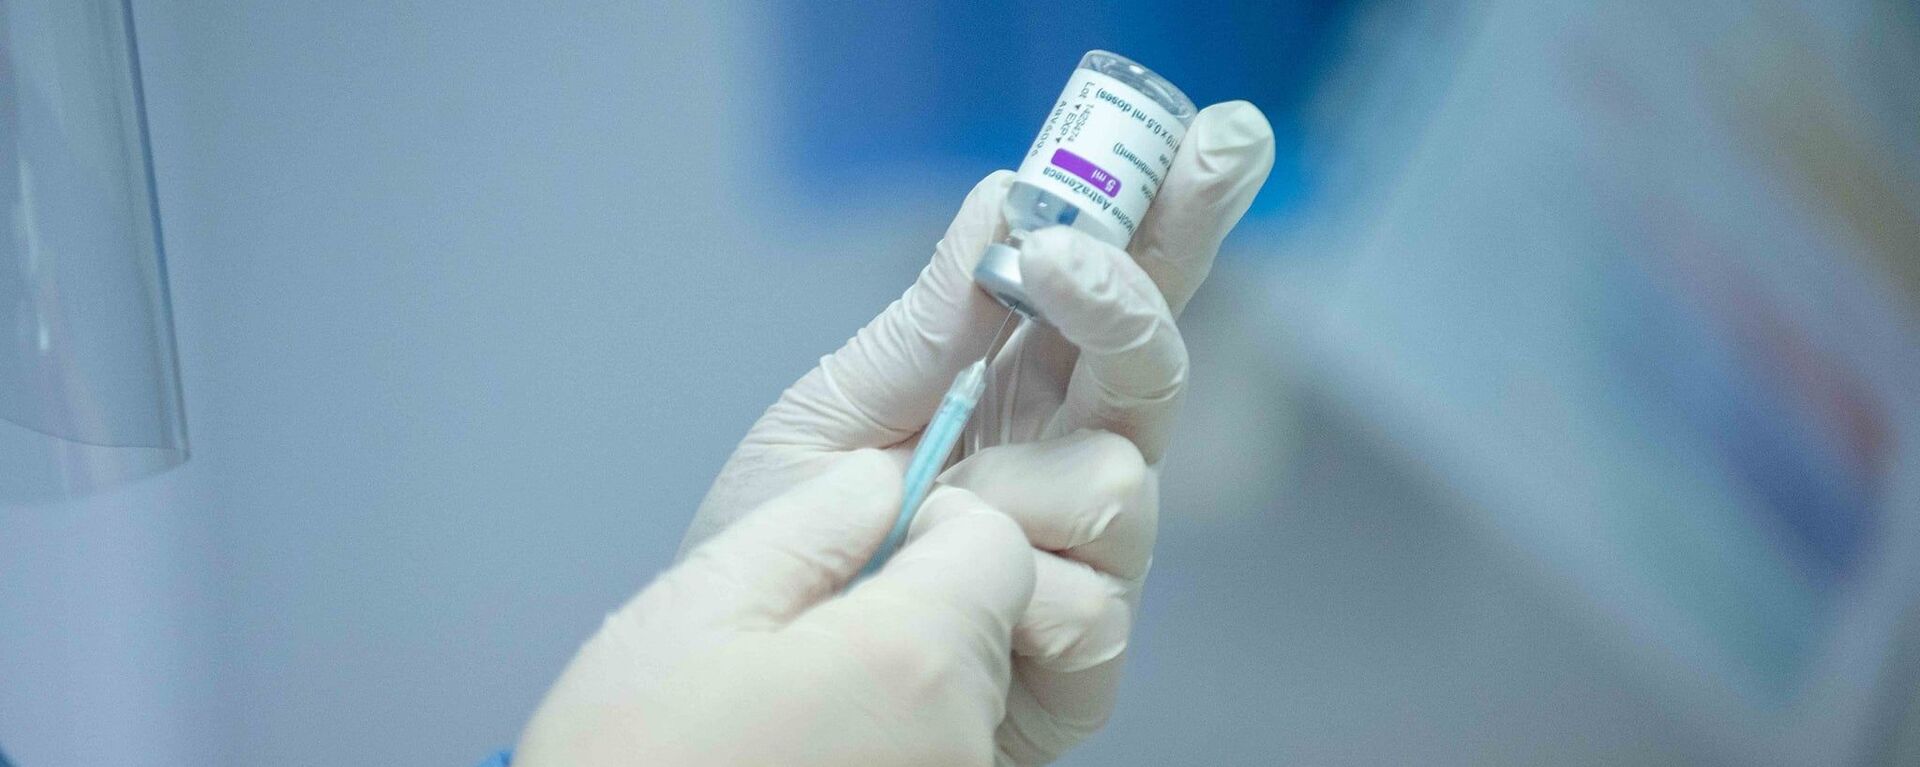 В Молдове стартовала вакцинация врачей от коронавируса - Sputnik Moldova, 1920, 15.03.2021